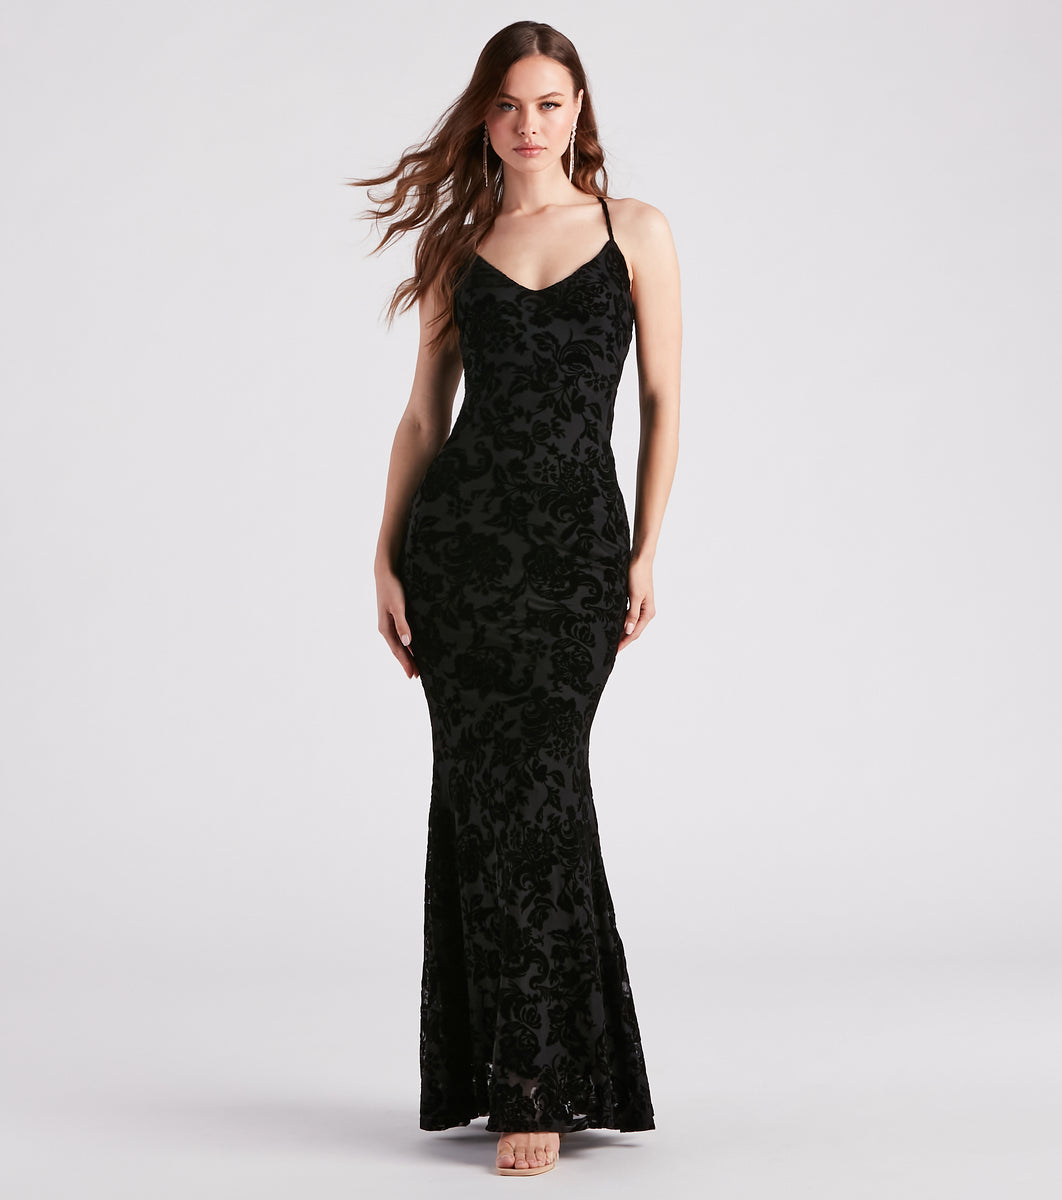 Eloise Formal Velvet Lace-Up Mermaid Dress